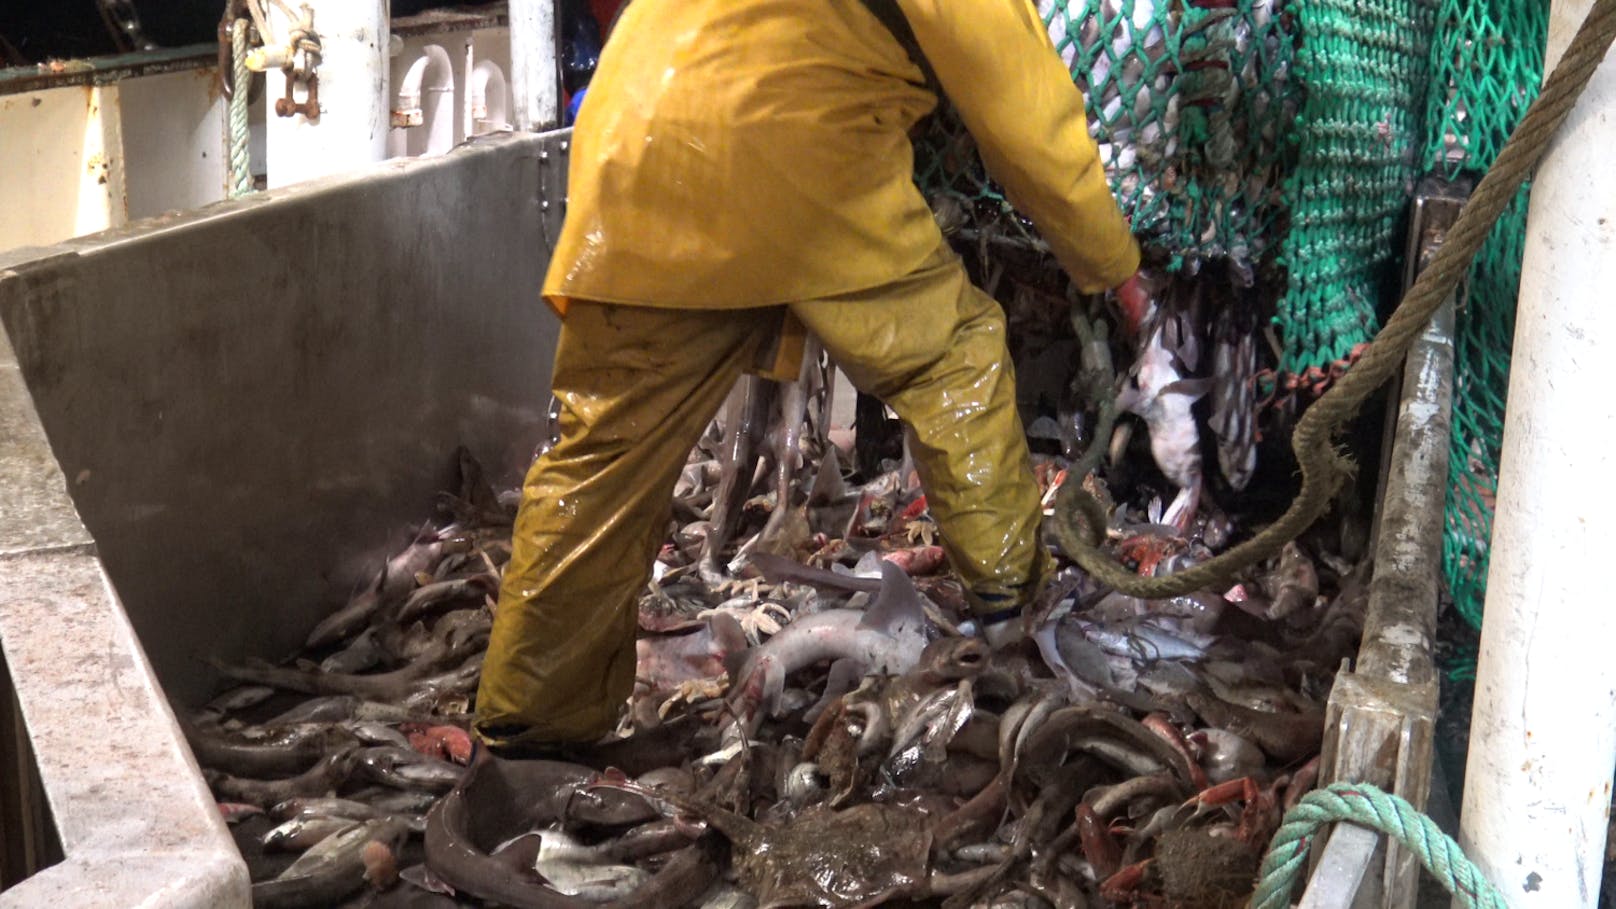 Der Umgang mit den Tieren ist unglaublich brutal. Schon beim Öffnen der Netze steigen die Fischer:innen auf den lebenden Tieren herum und verletzen viele schwer.